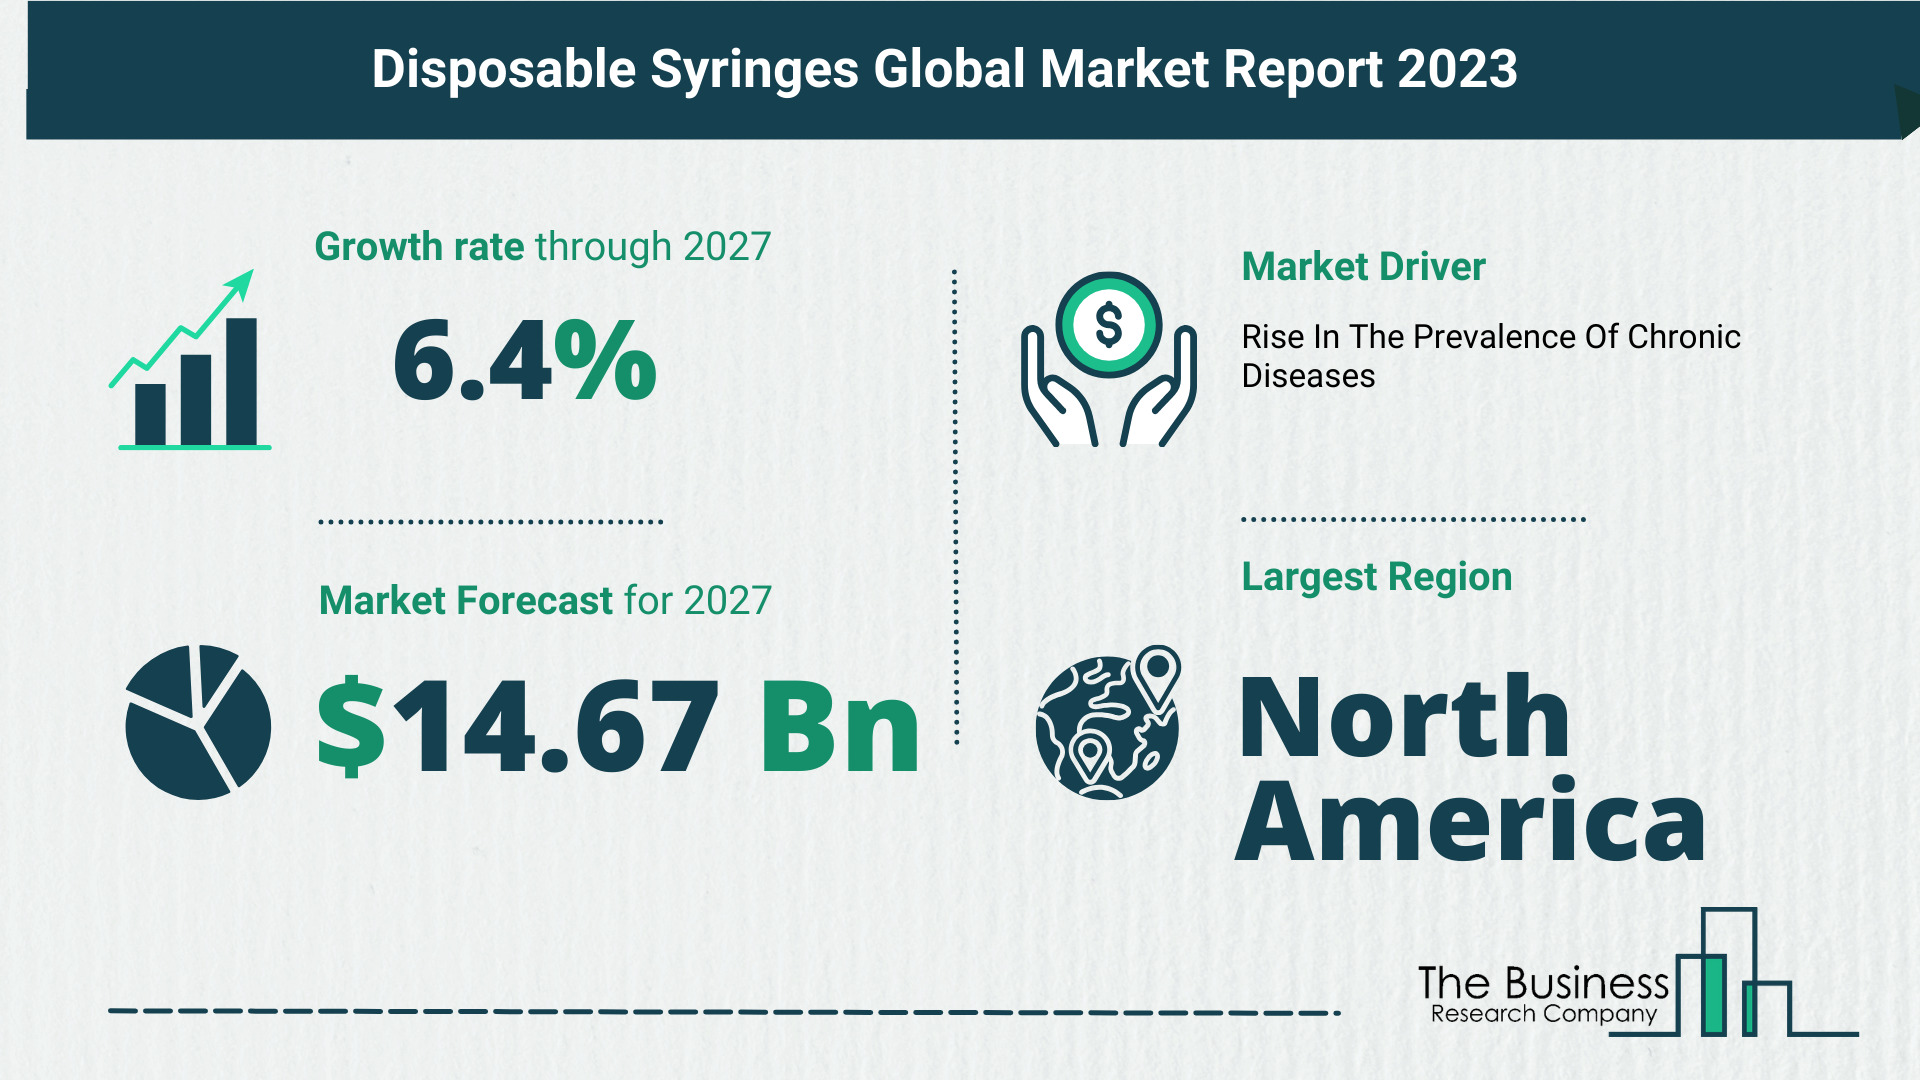 Global Disposable Syringes Market Size